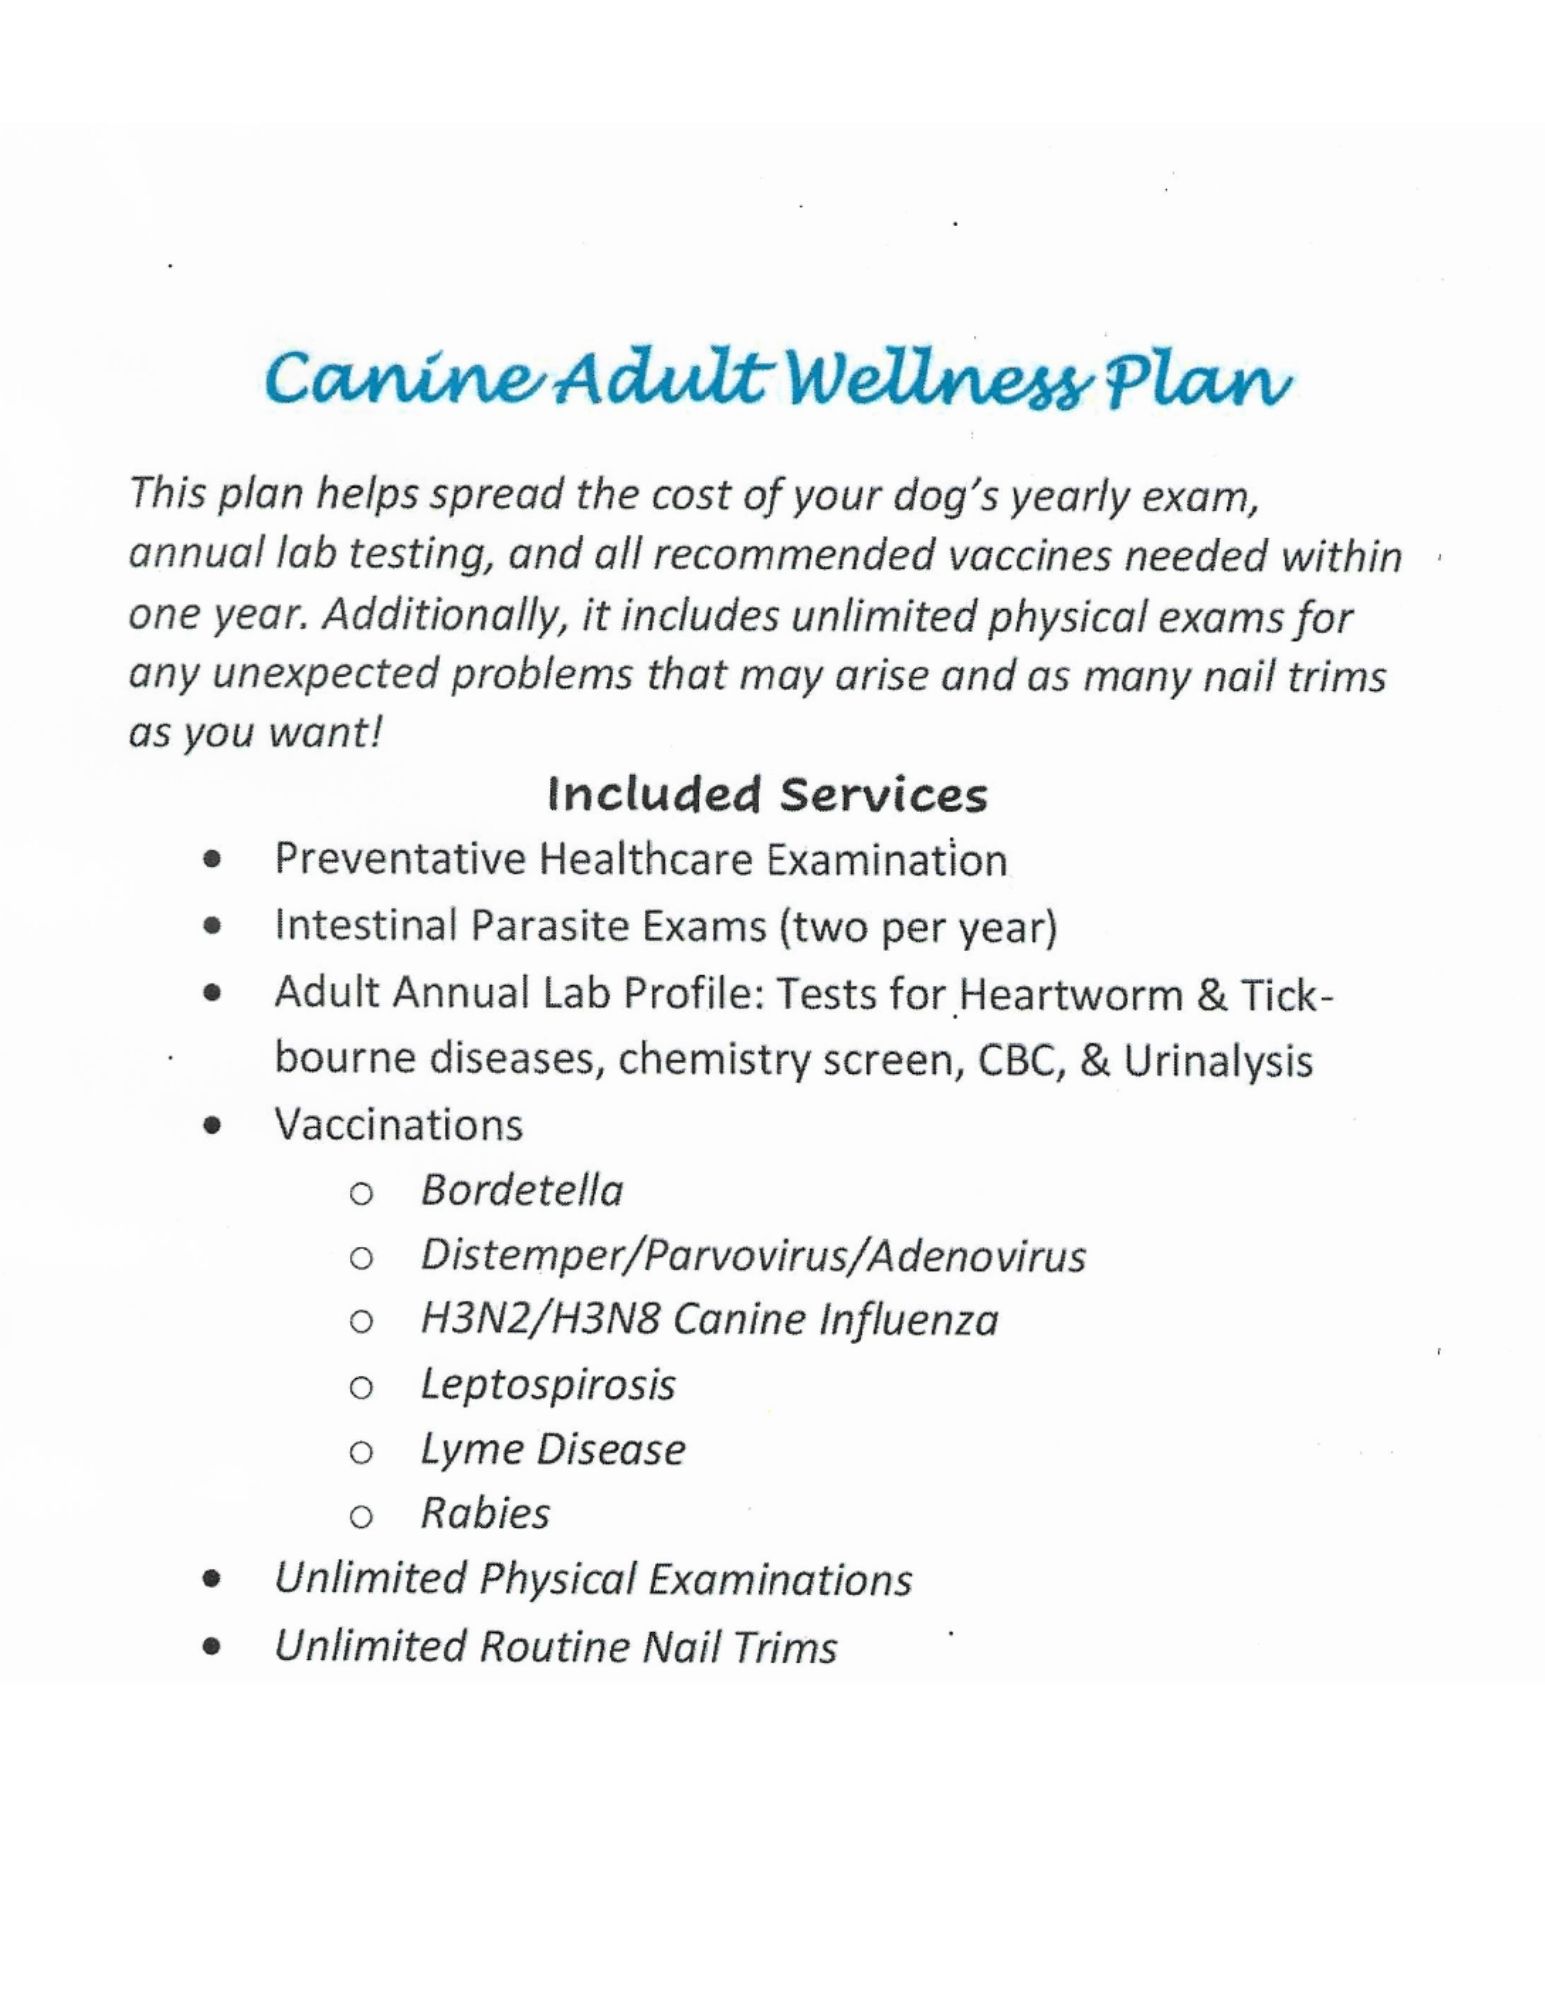 Feline Senior Wellness Plan